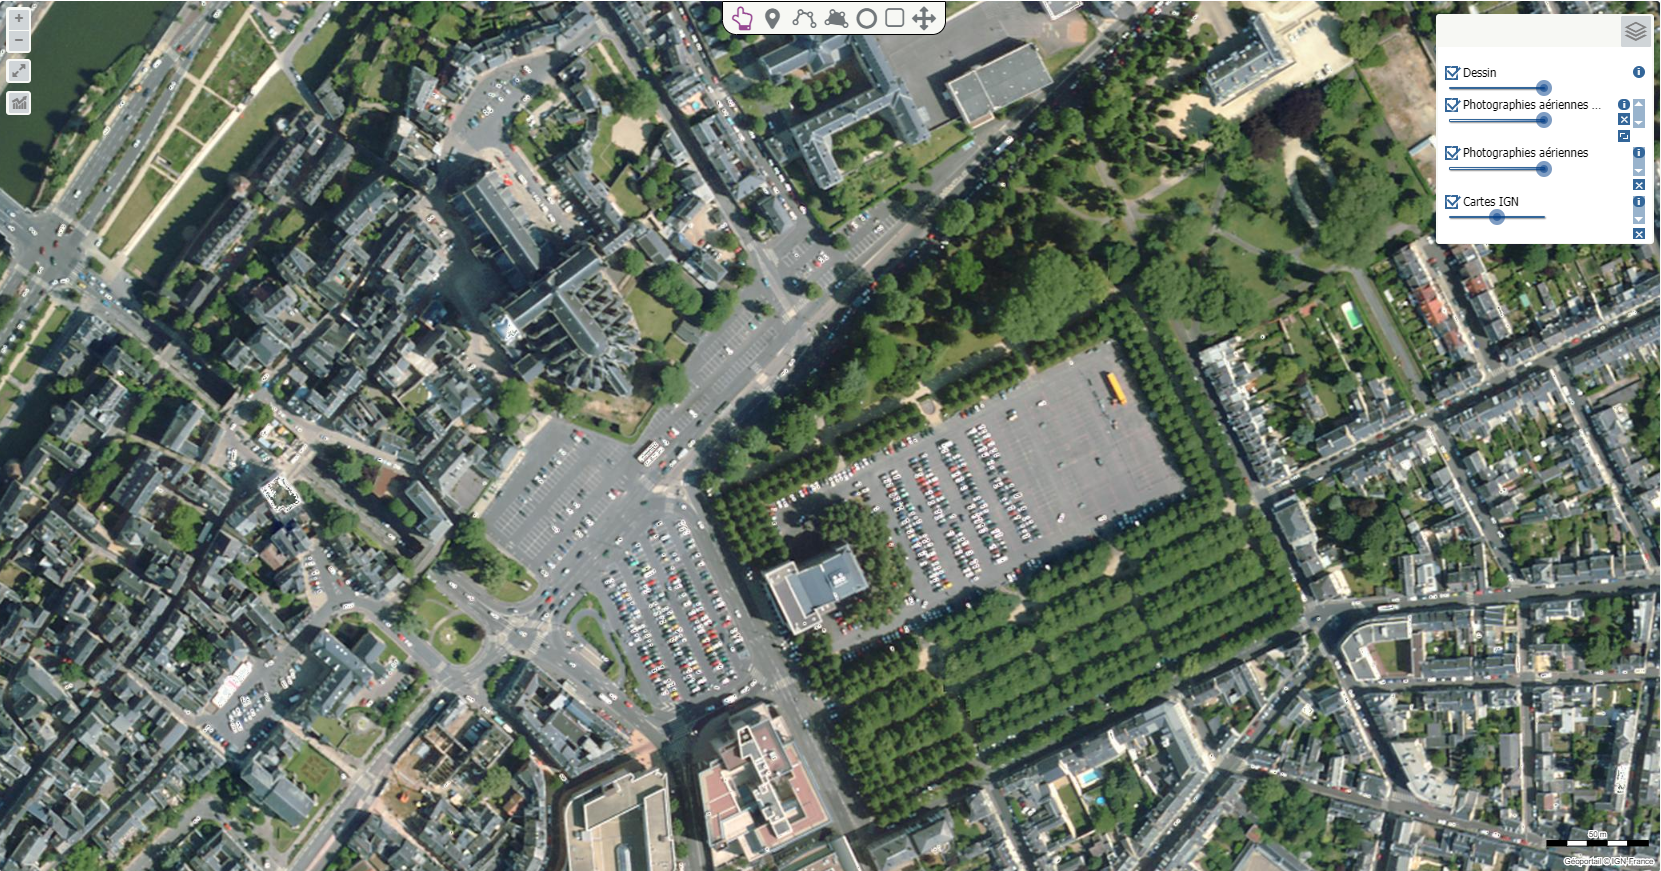 Photographie aérienne du centre du Mans